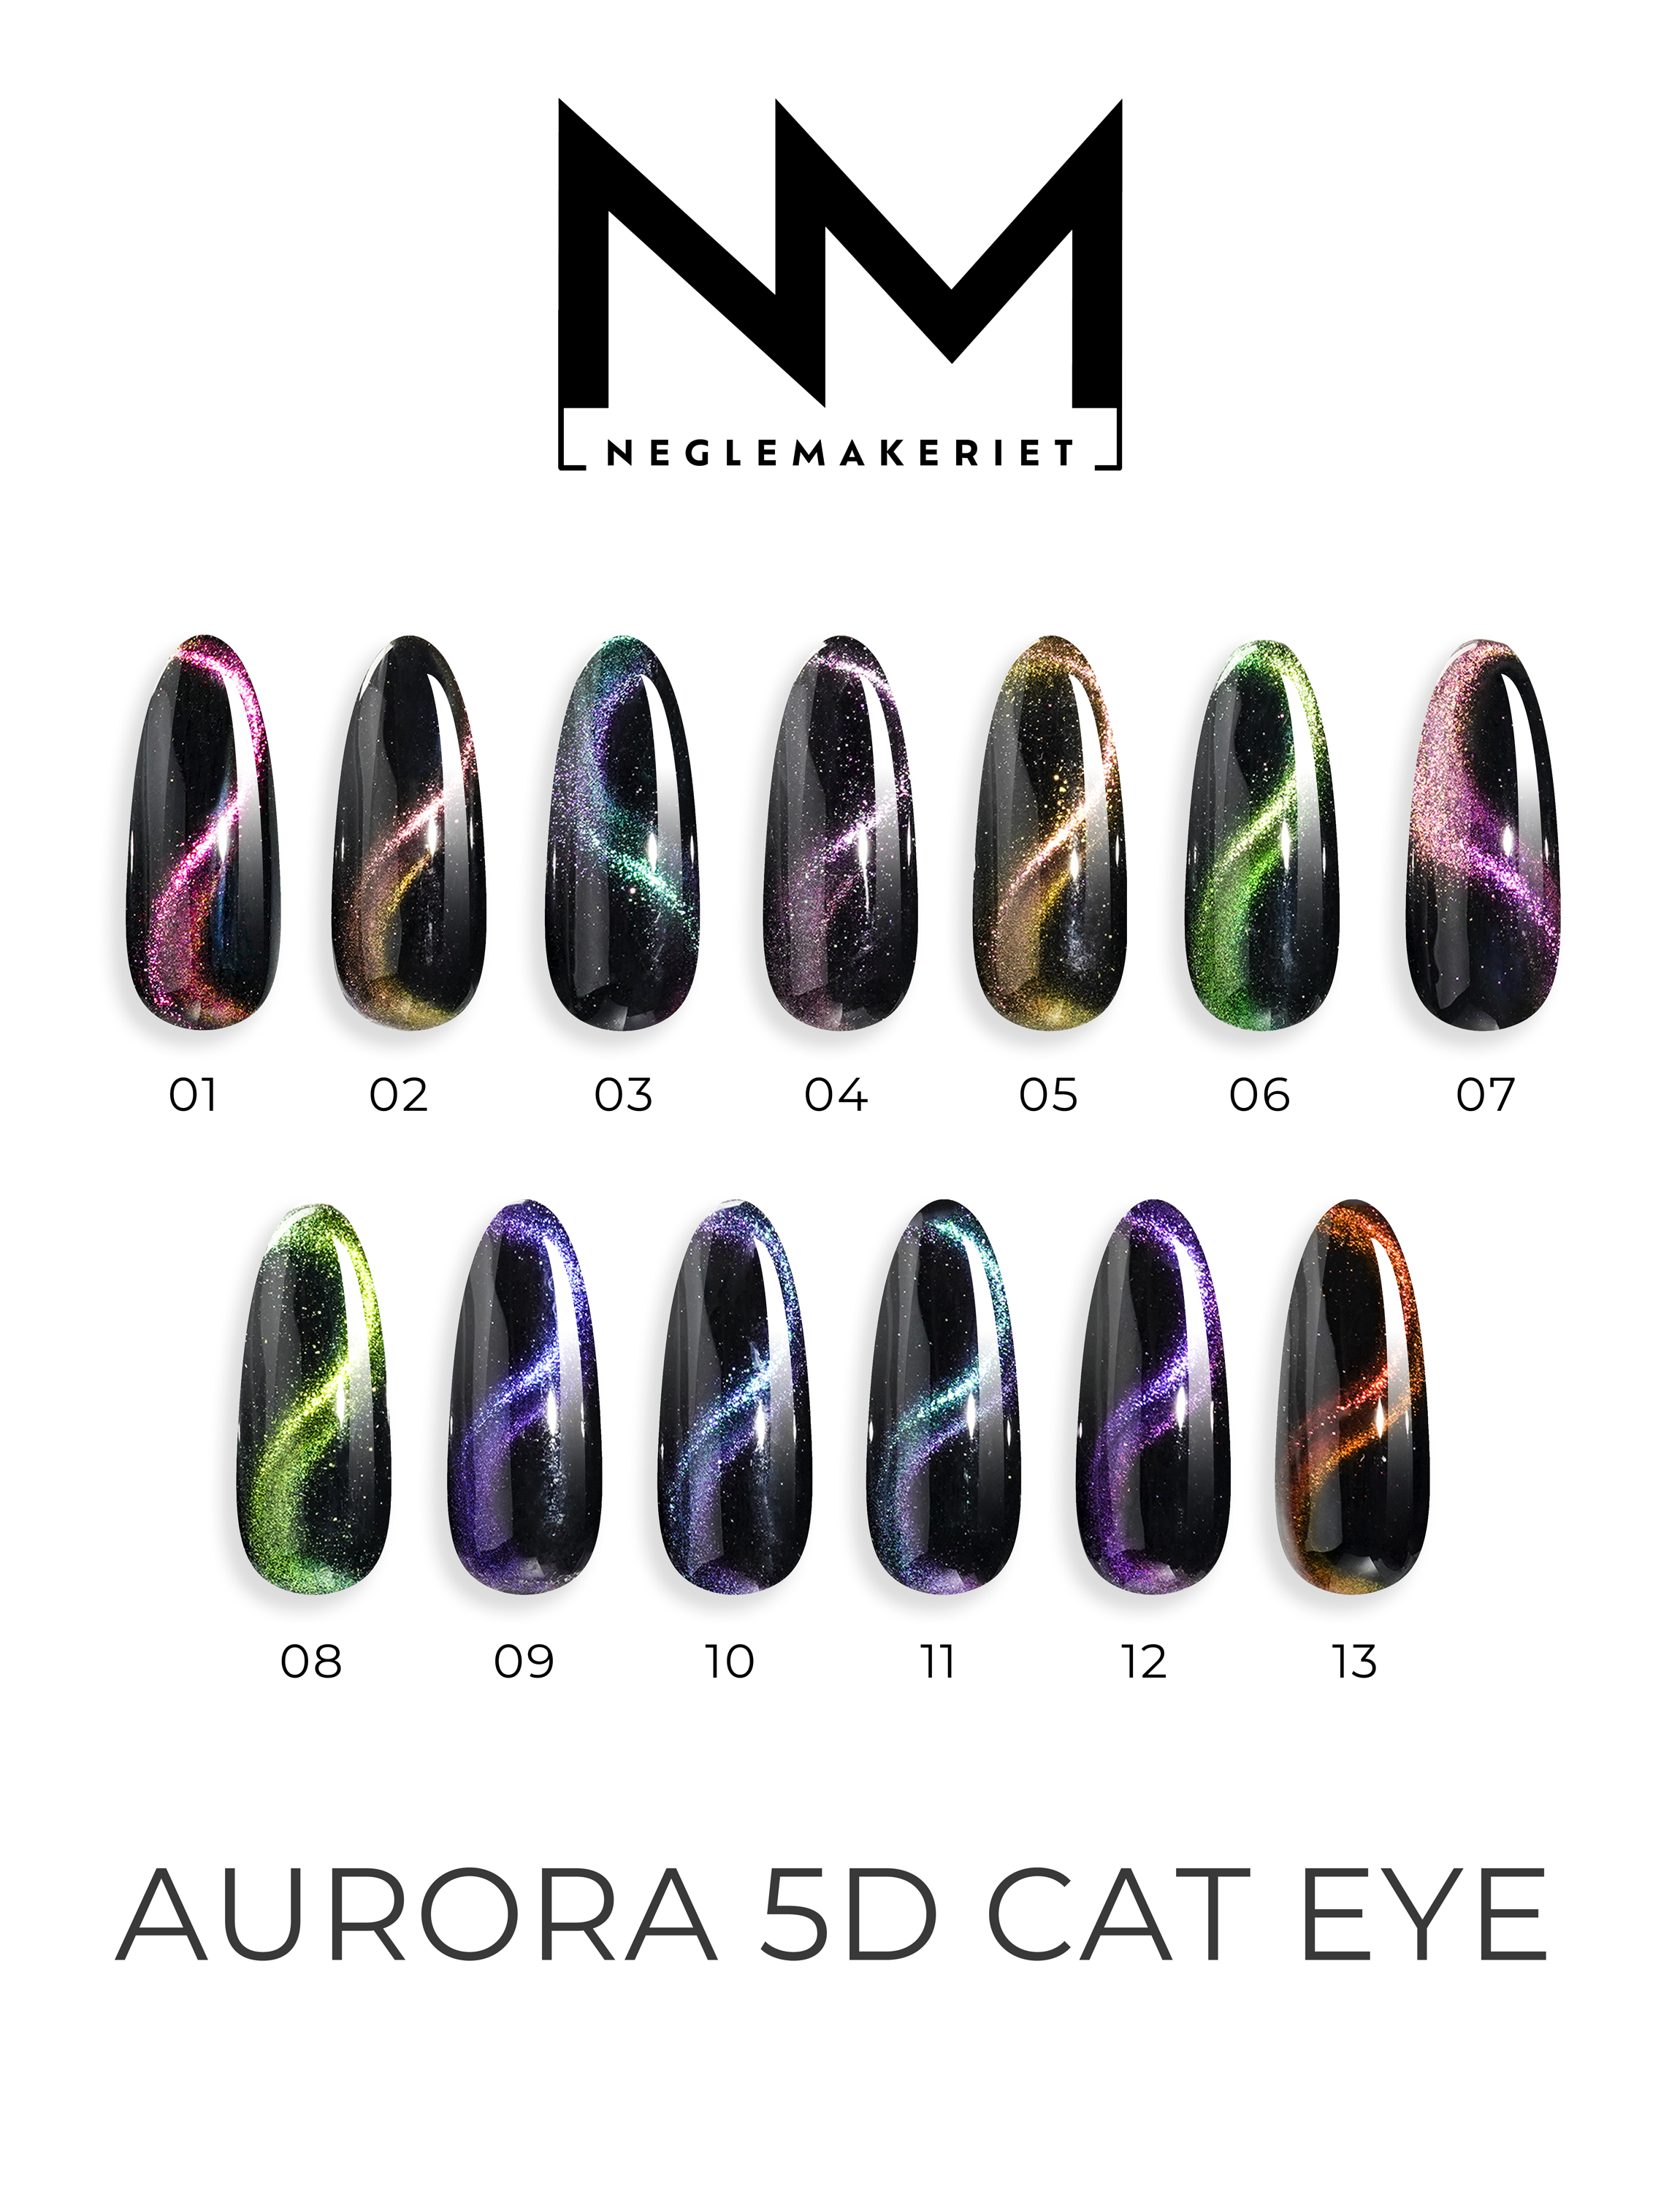 Fargekart over Aurora Cat Eye fra Neglemakeriet